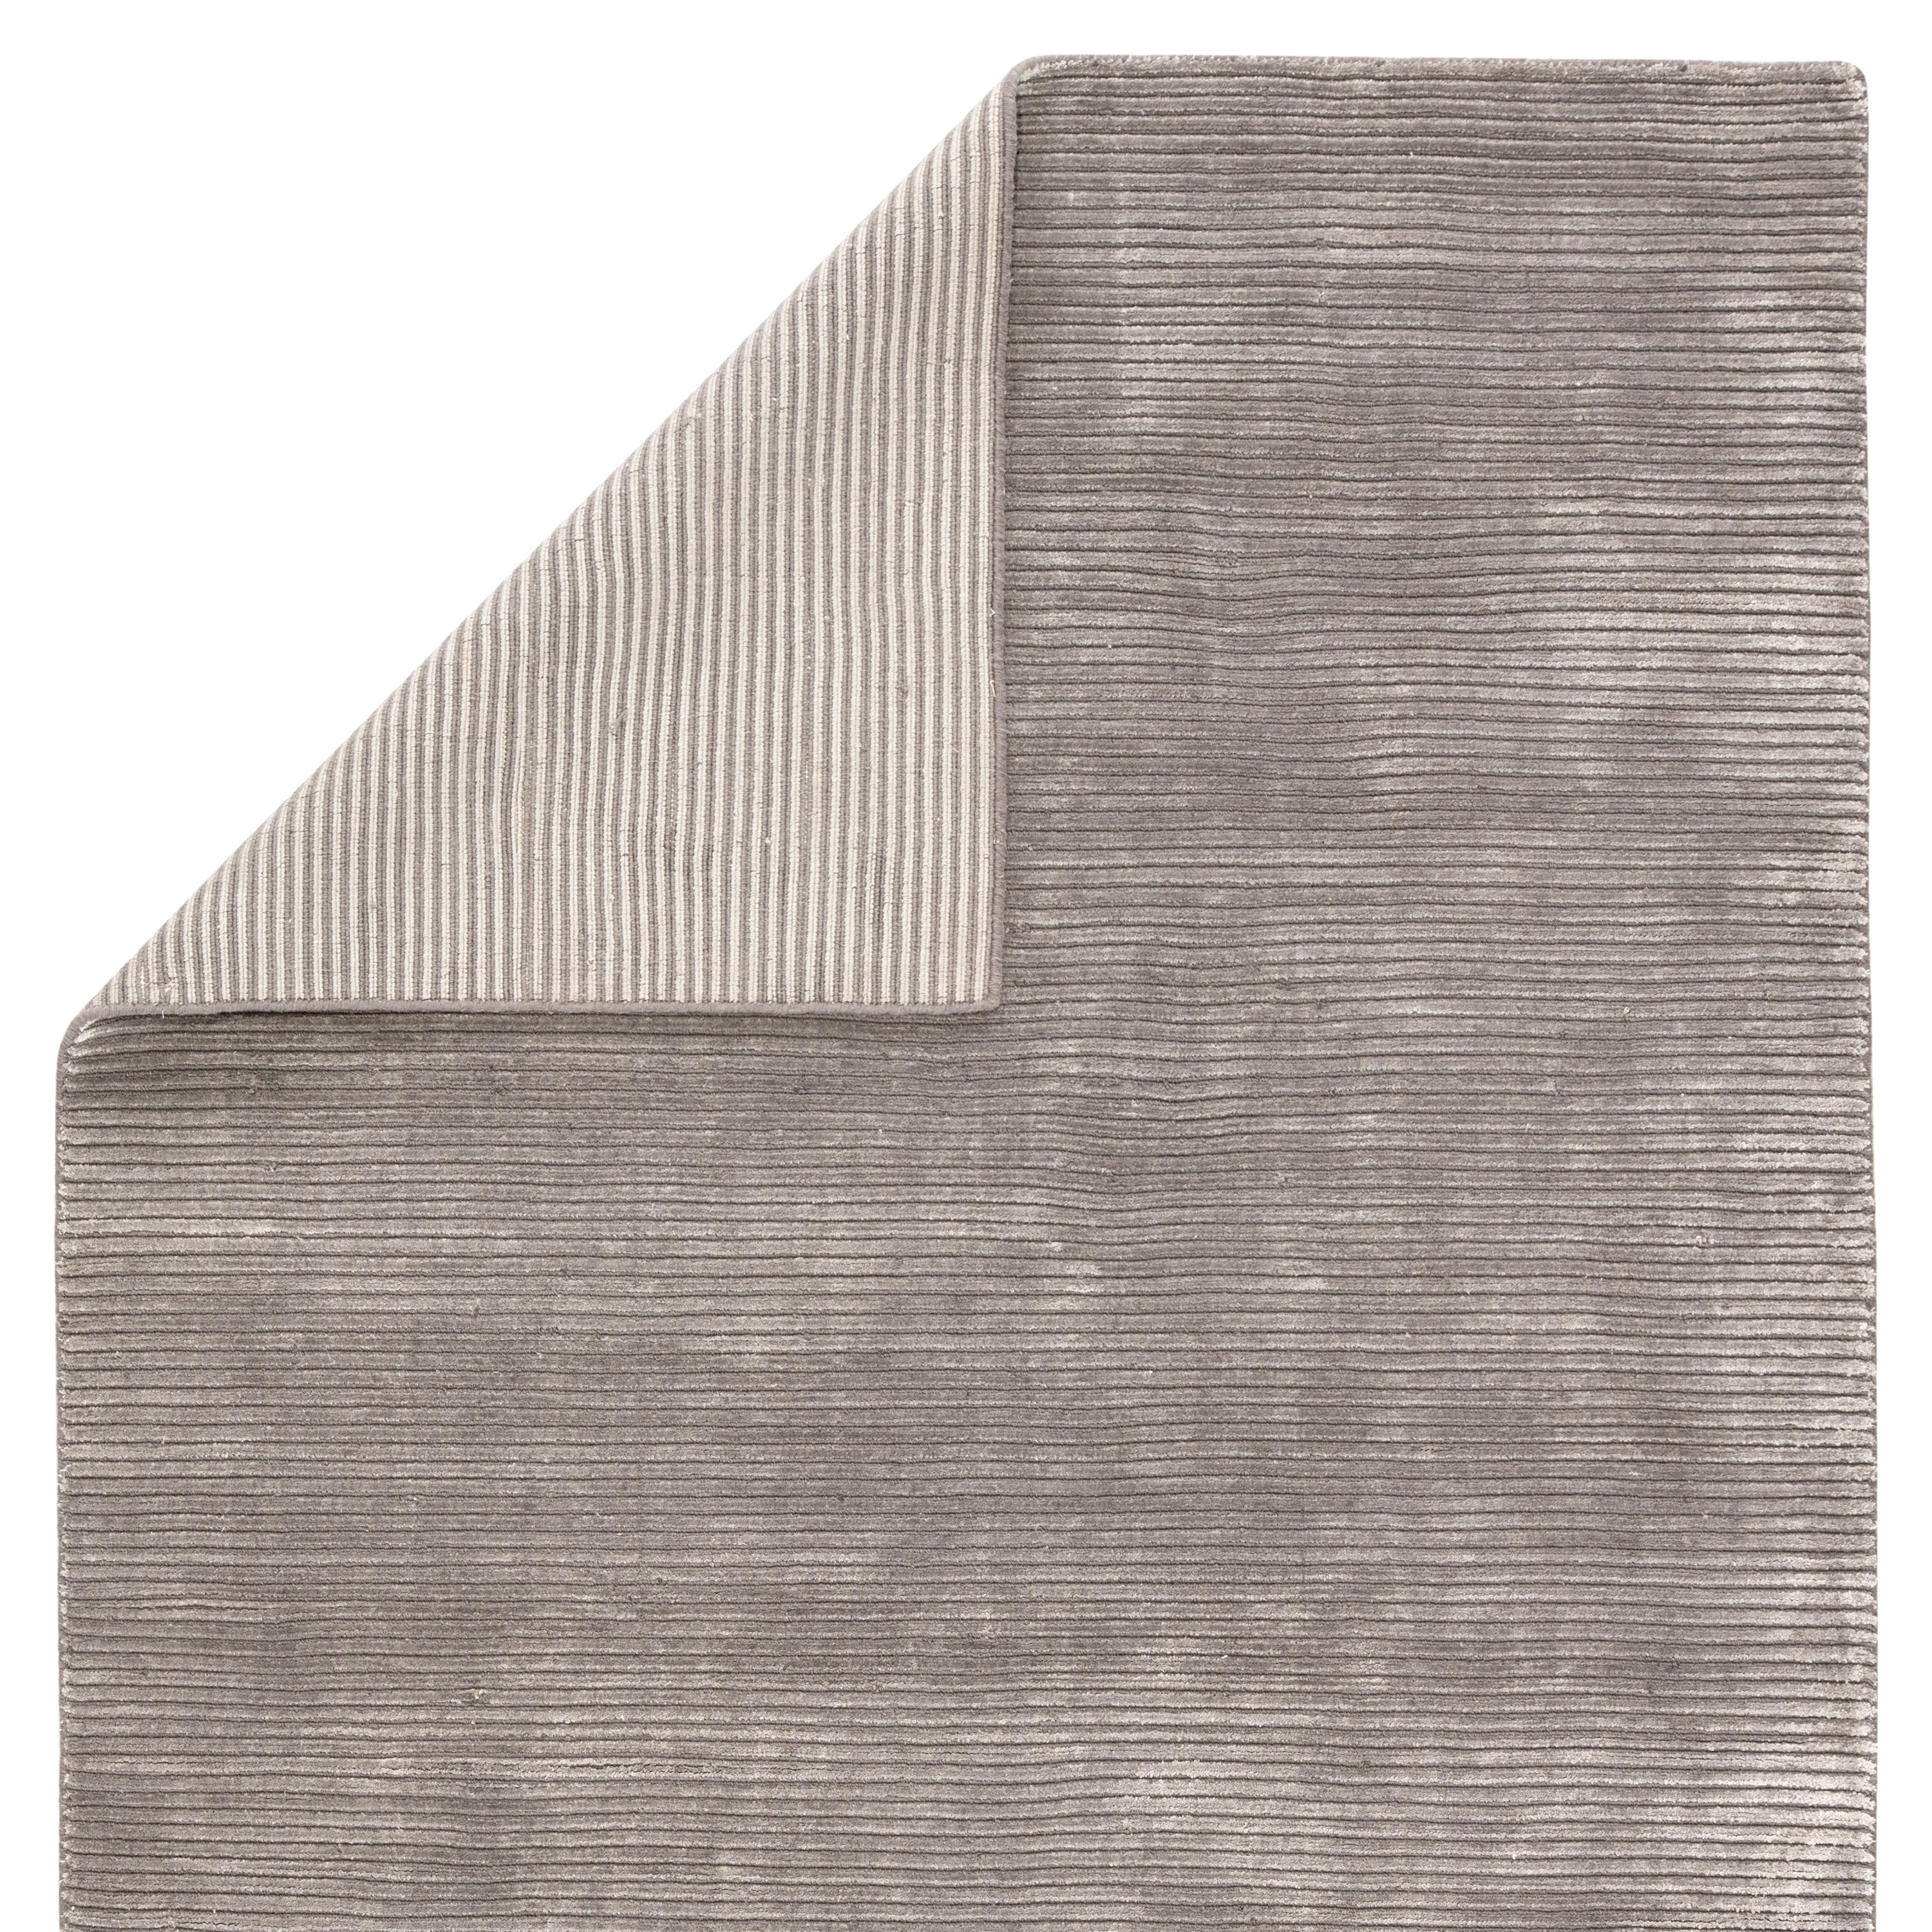 Basis Handmade Solid Gray/ Silver Area Rug (9' X 12') - Image 2